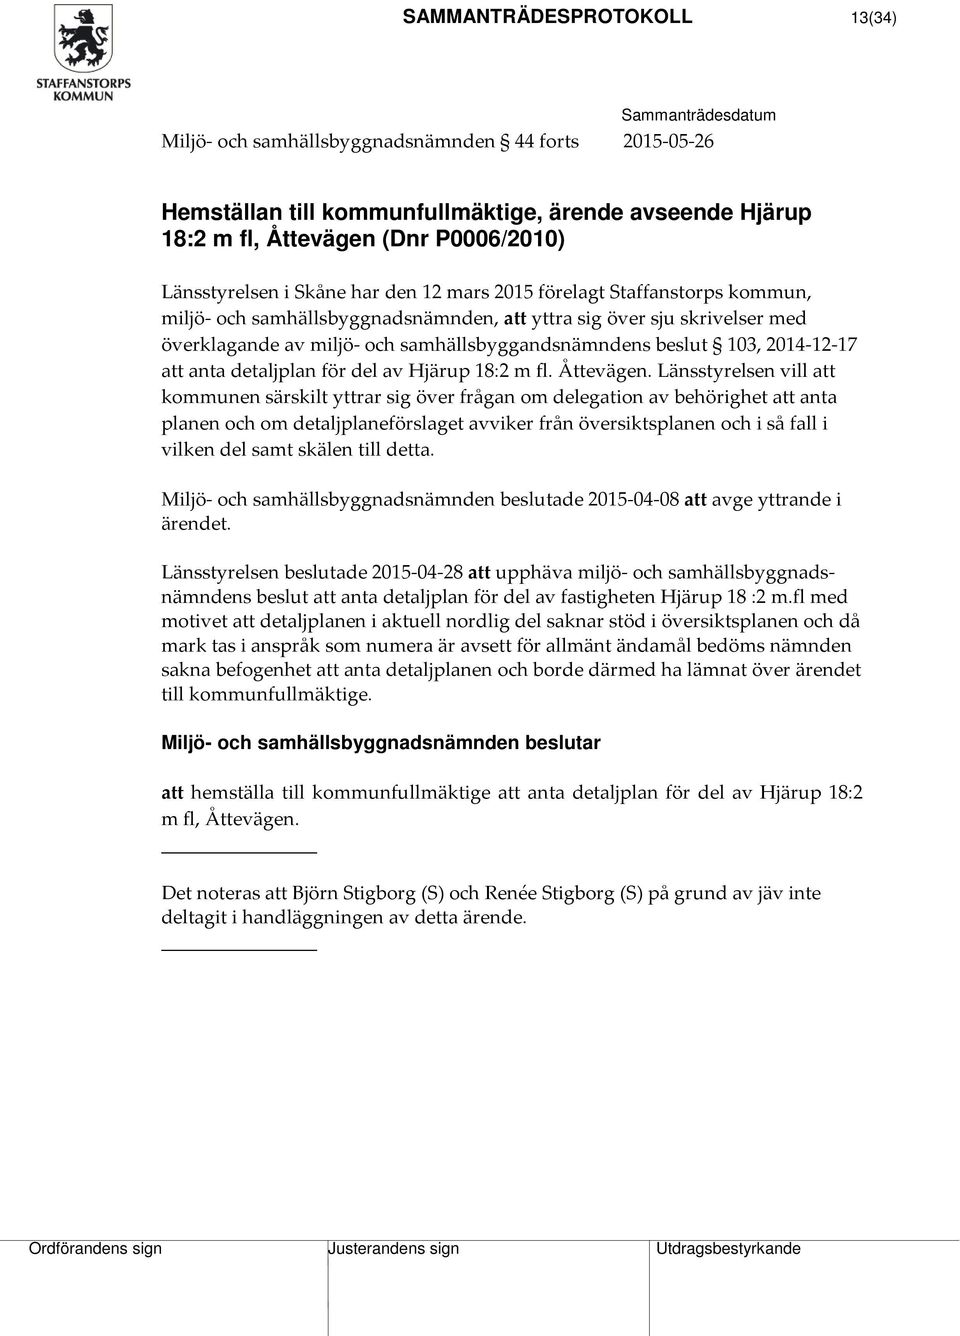 2014-12-17 att anta detaljplan för del av Hjärup 18:2 m fl. Åttevägen.